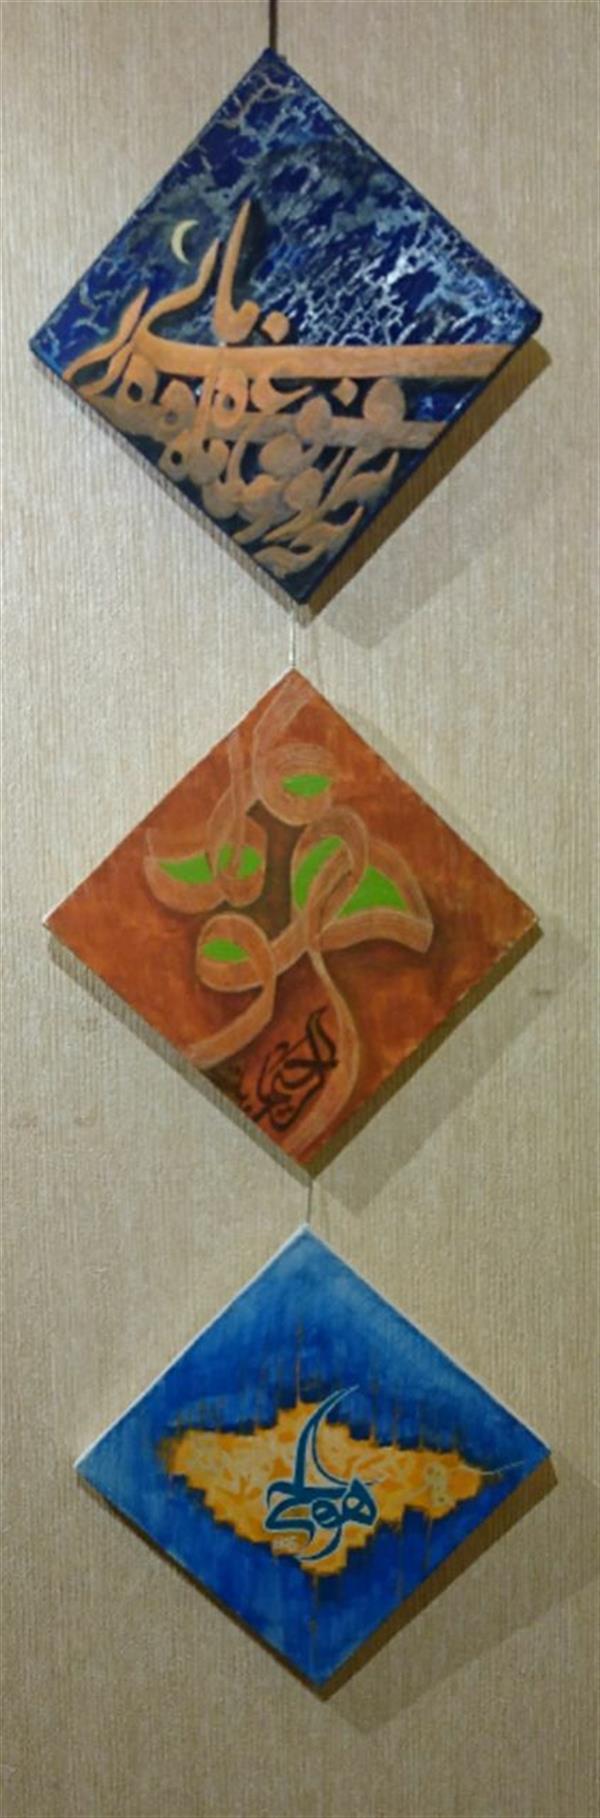 هنر خوشنویسی محفل خوشنویسی حسین صفدری ۲۰×۲۰